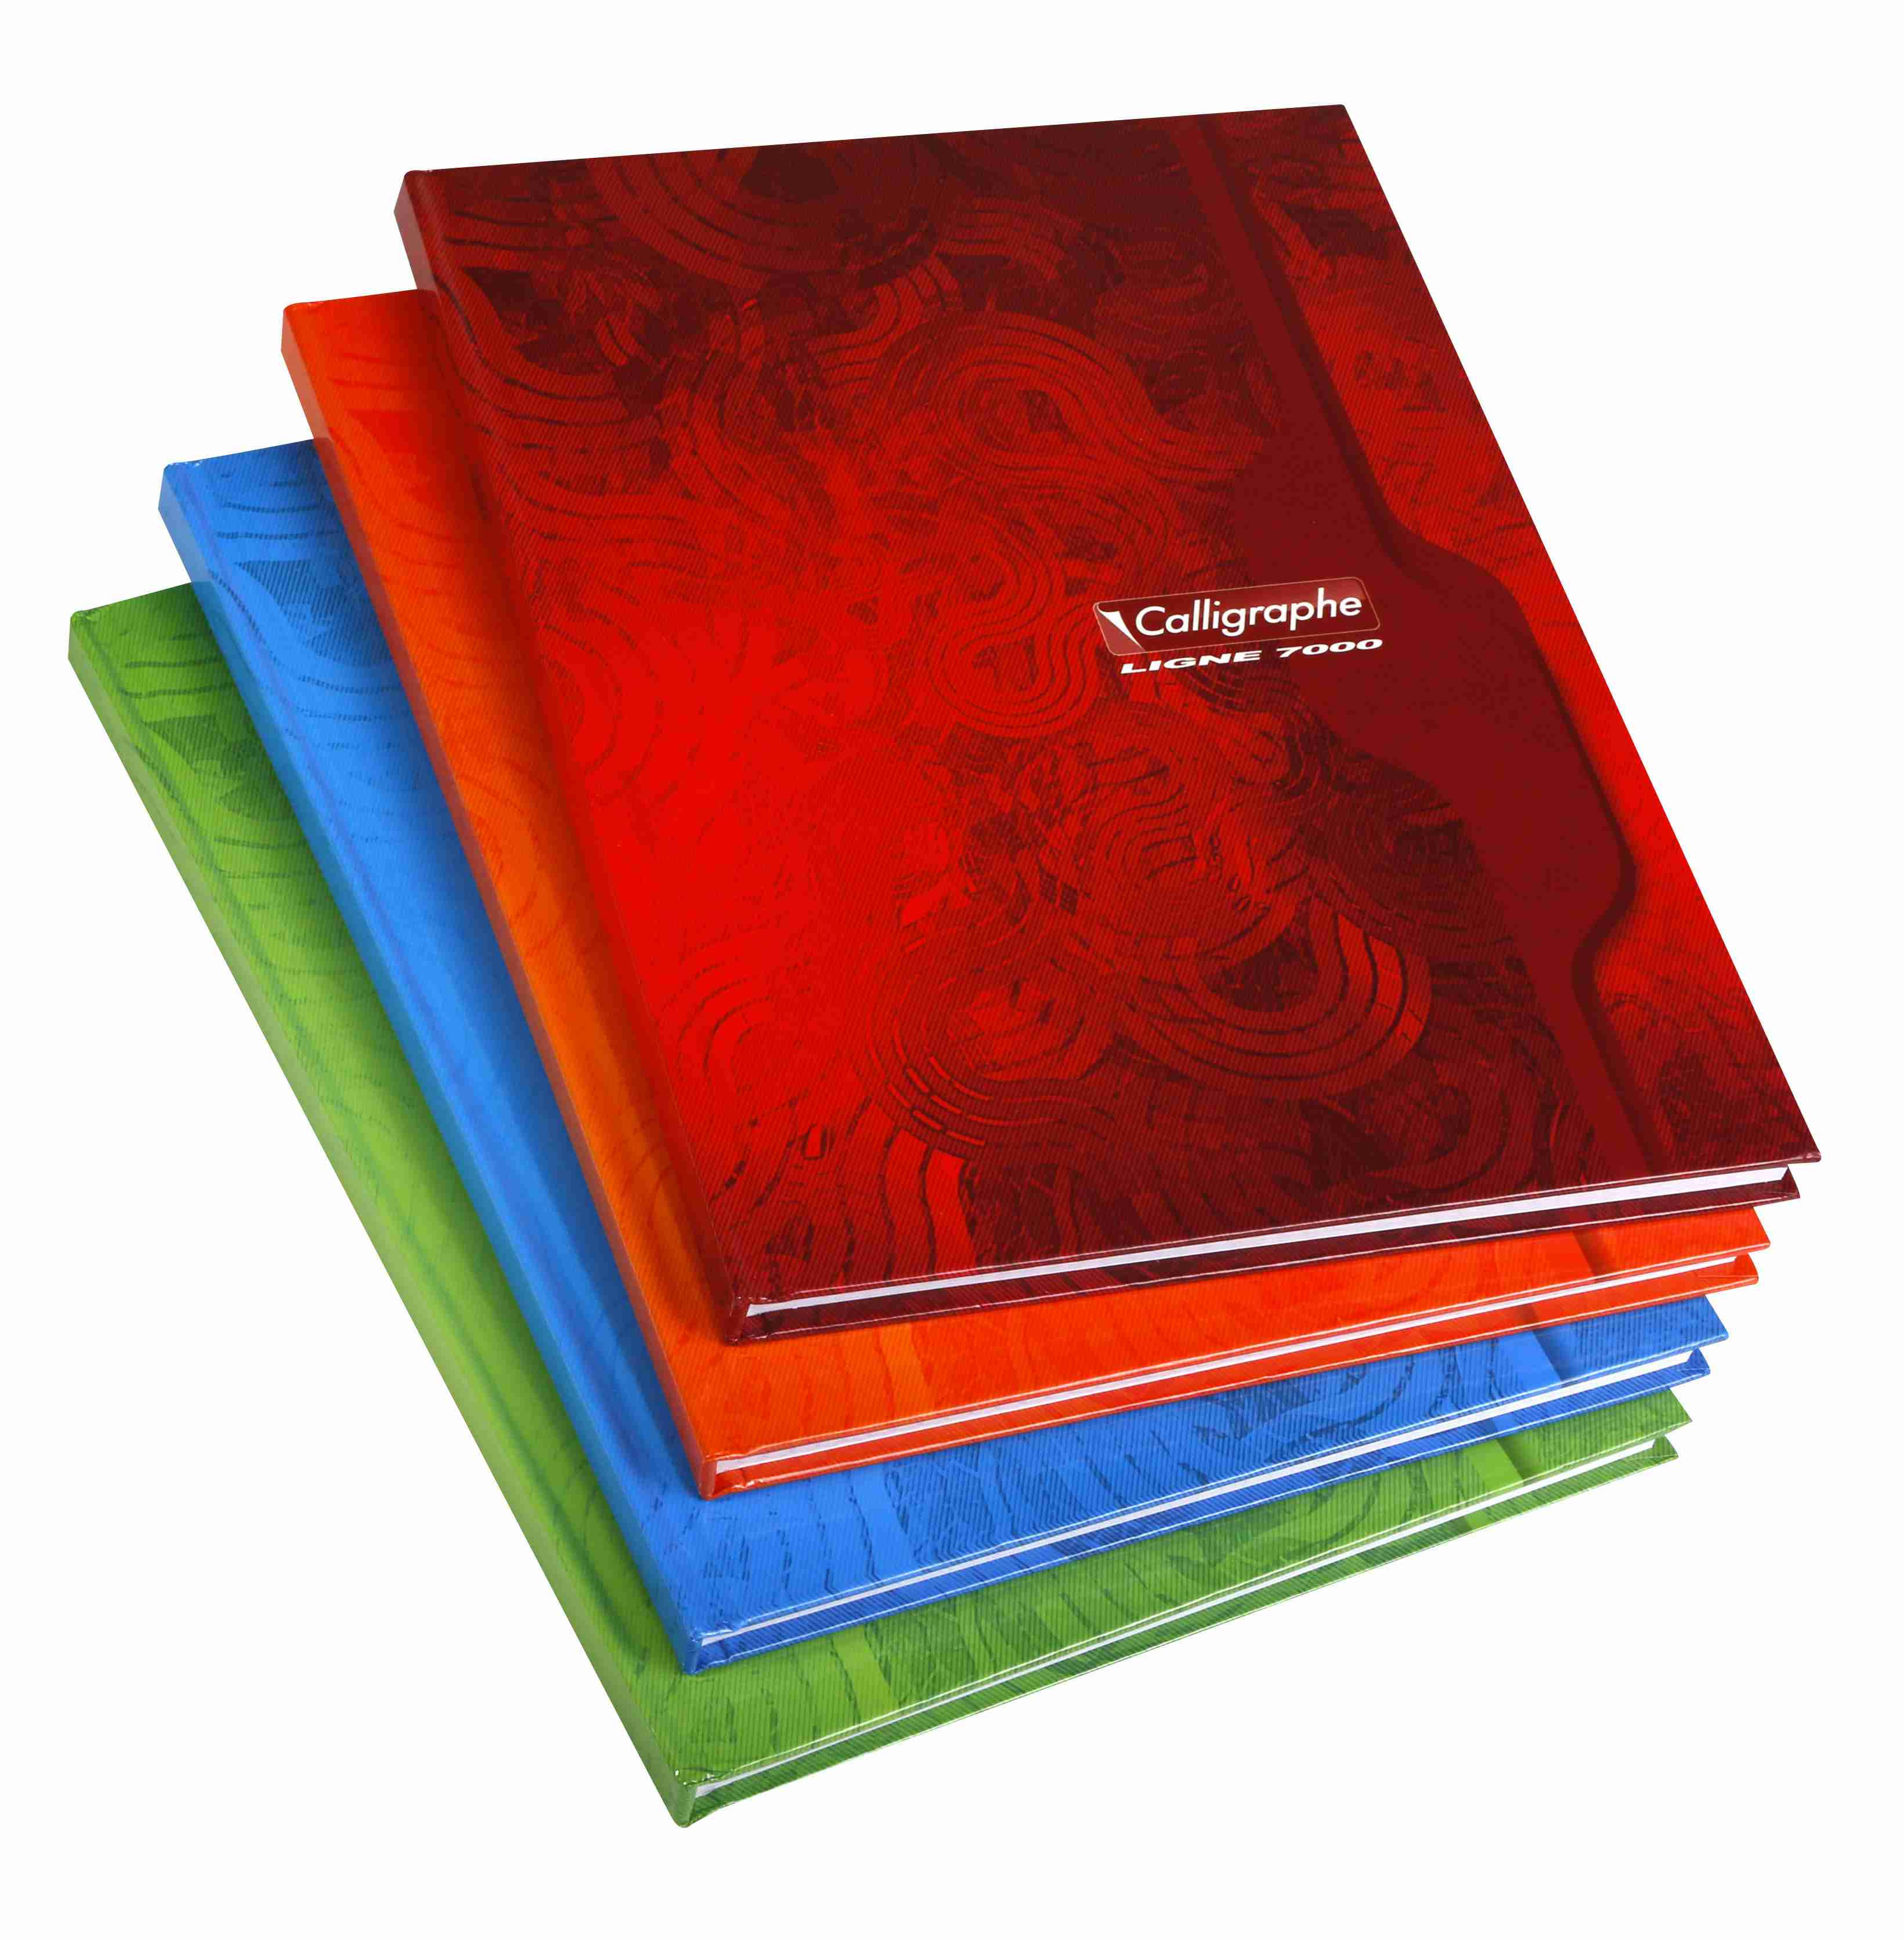 Cahier polypro Calligraphe grand format 24x32 192p grands carreaux (séyès)  - rouge